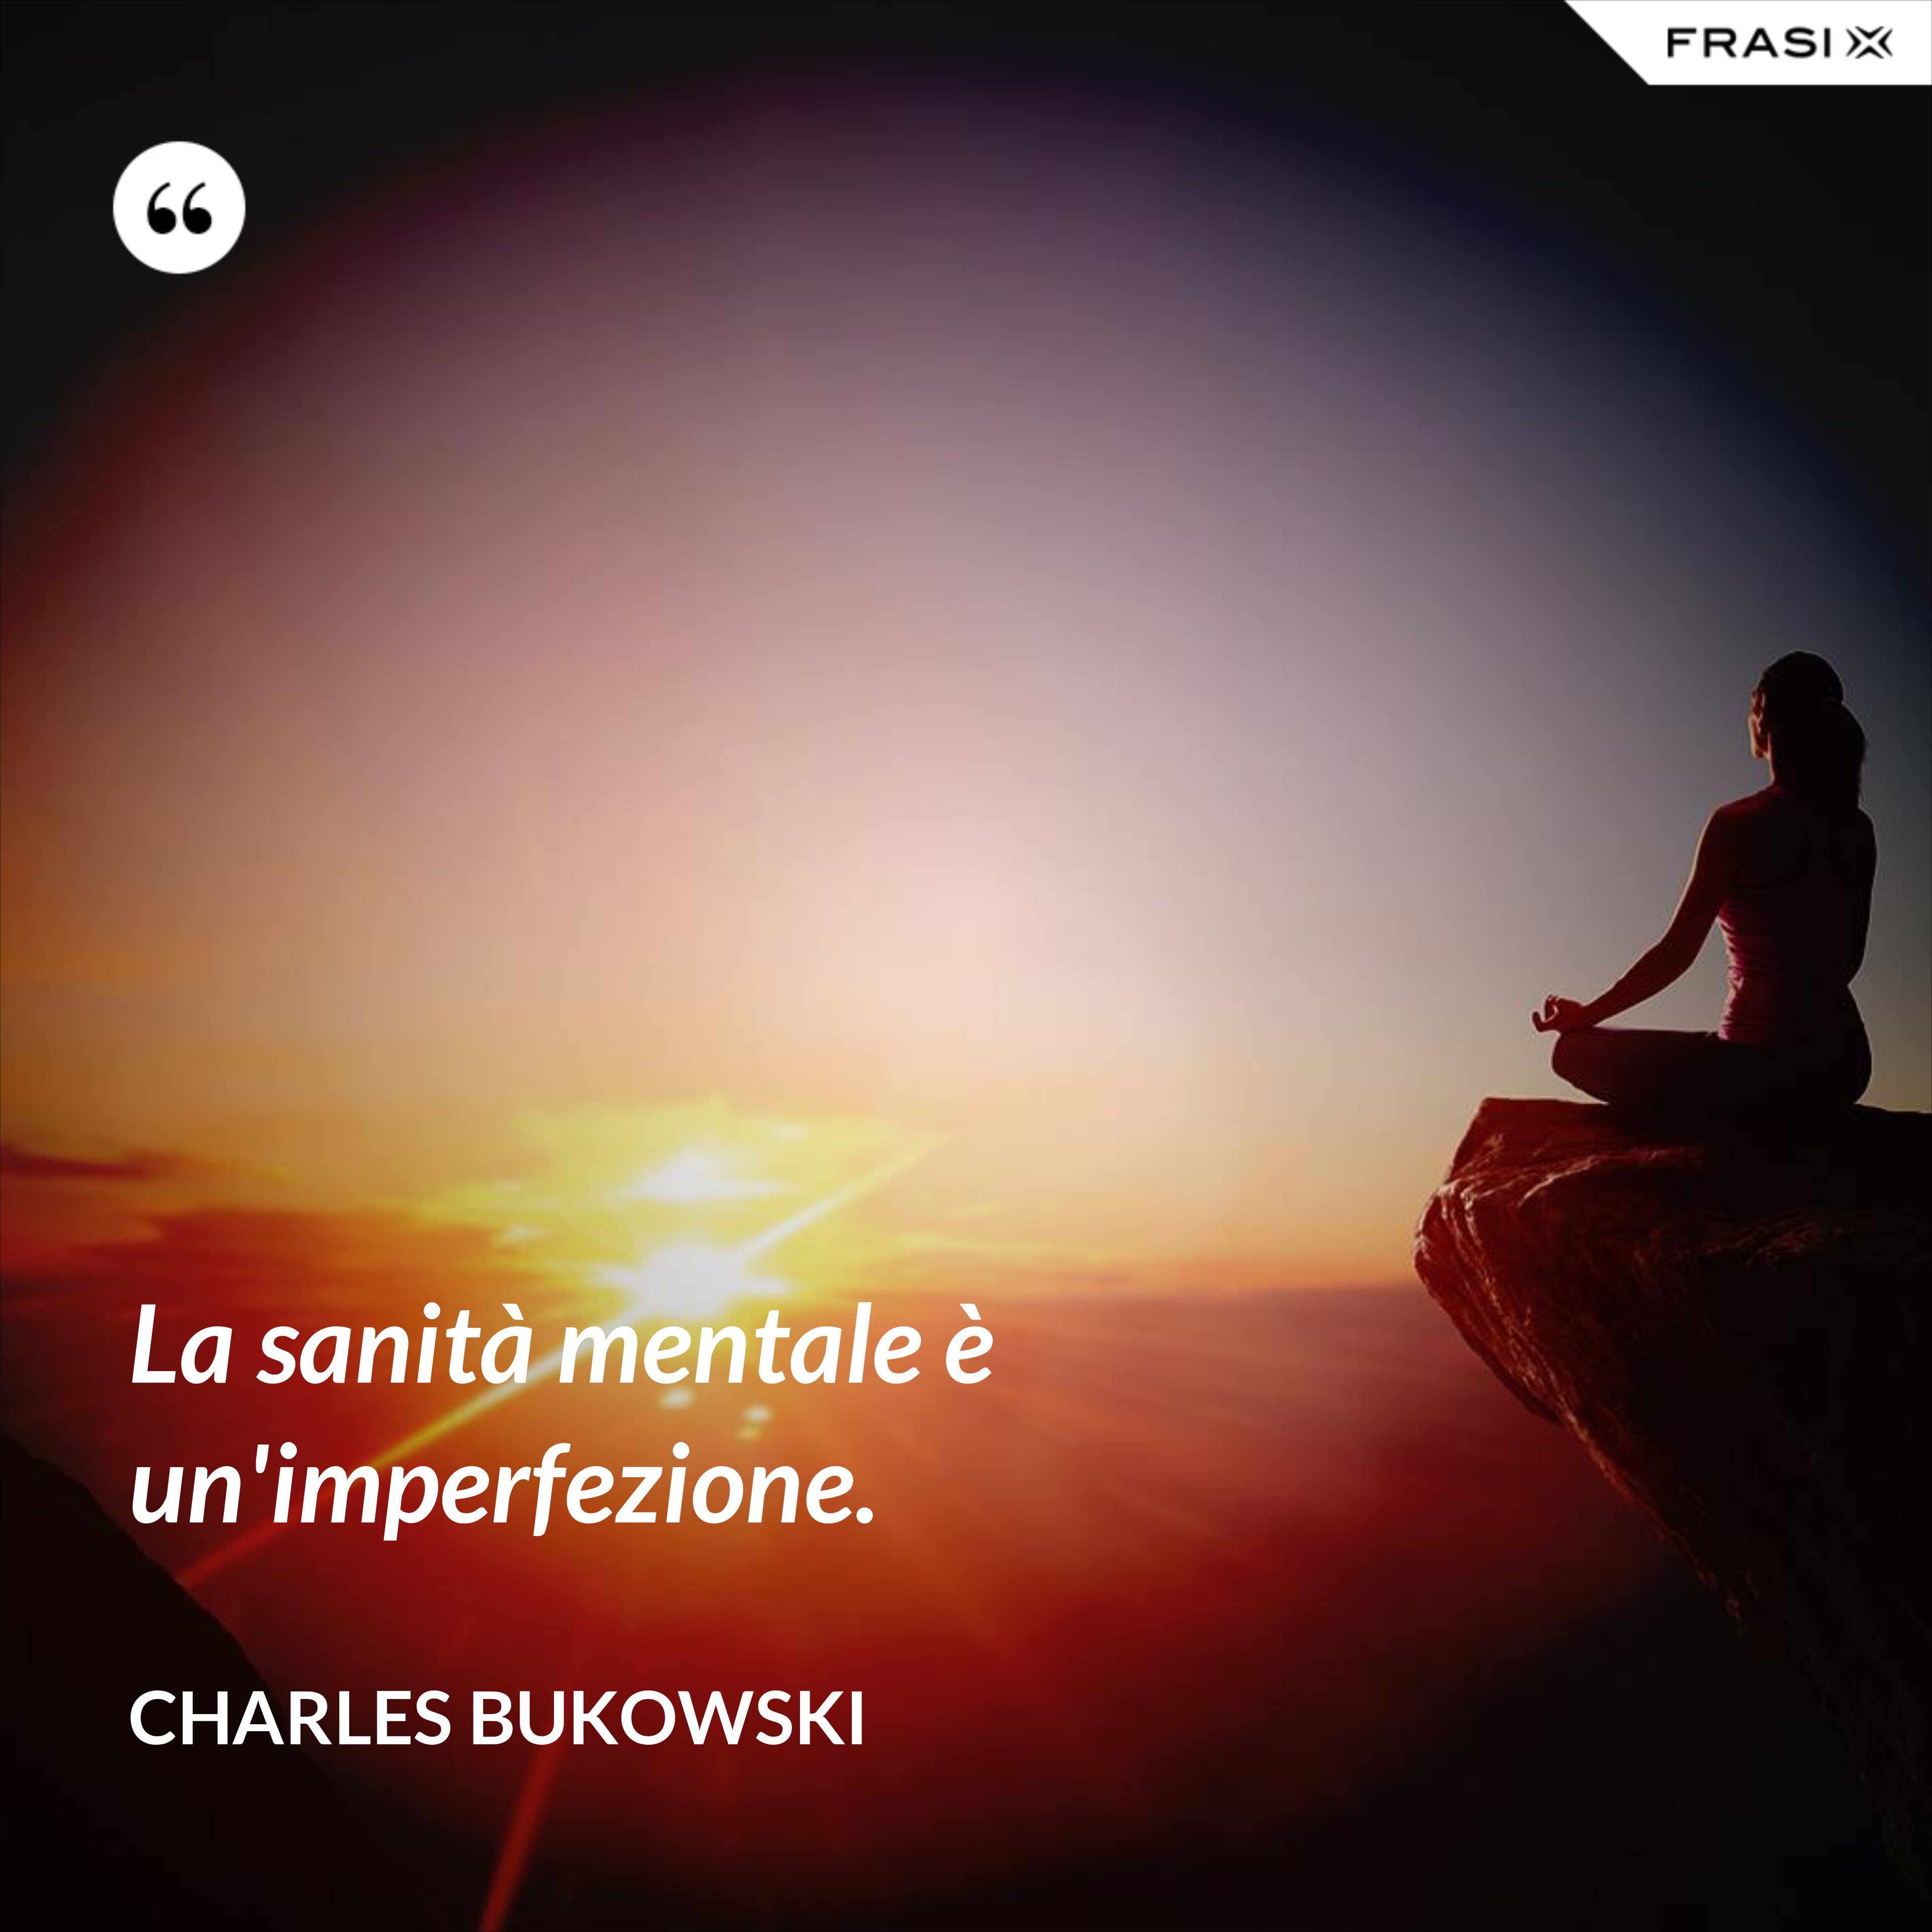 La sanità mentale è un'imperfezione. - Charles Bukowski